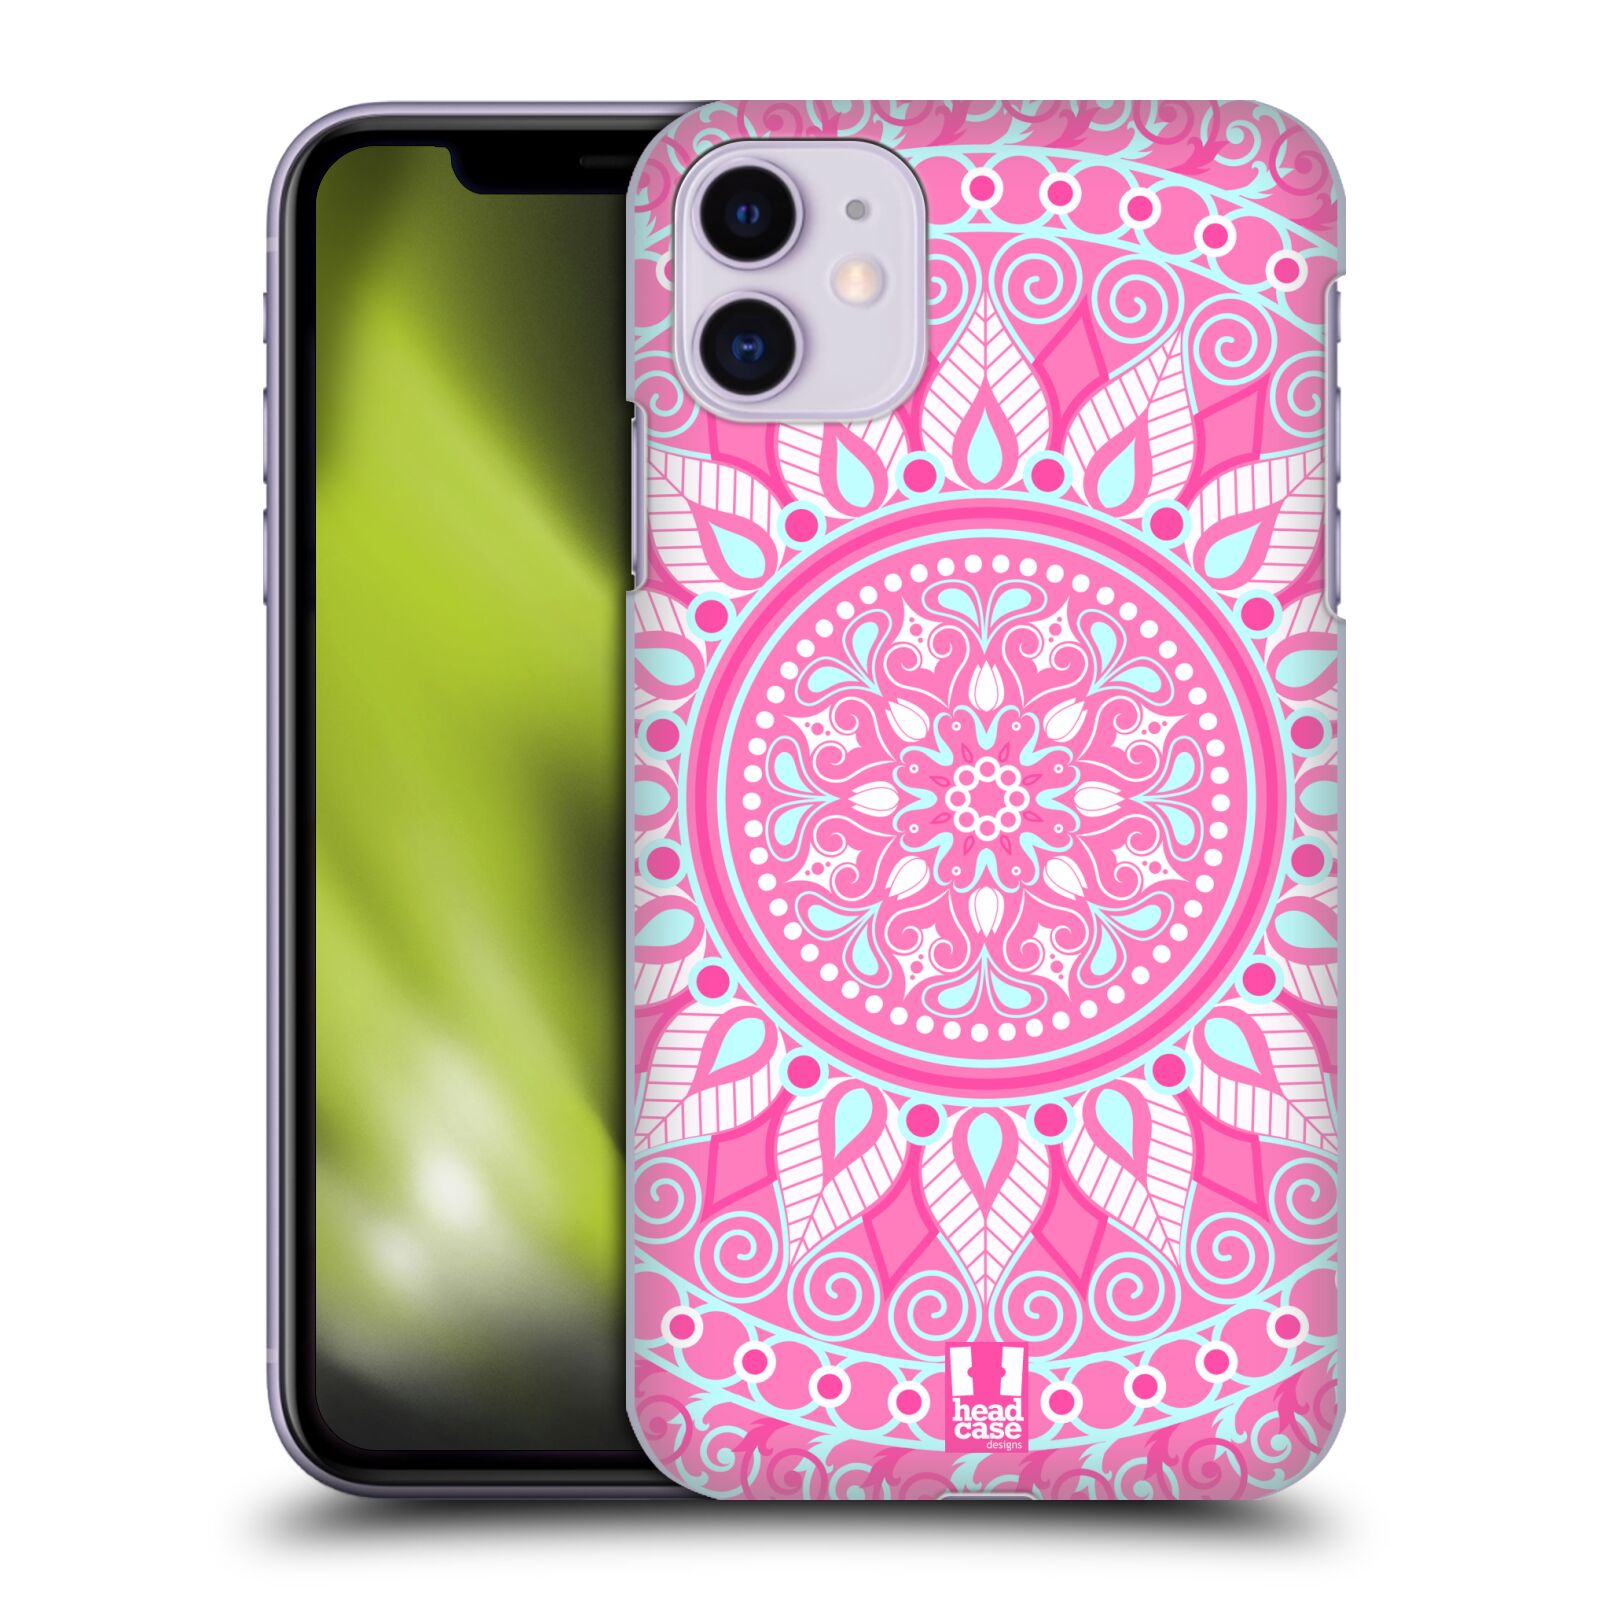 Pouzdro na mobil Apple Iphone 11 - HEAD CASE - vzor Indie Mandala slunce barevný motiv RŮŽOVÁ